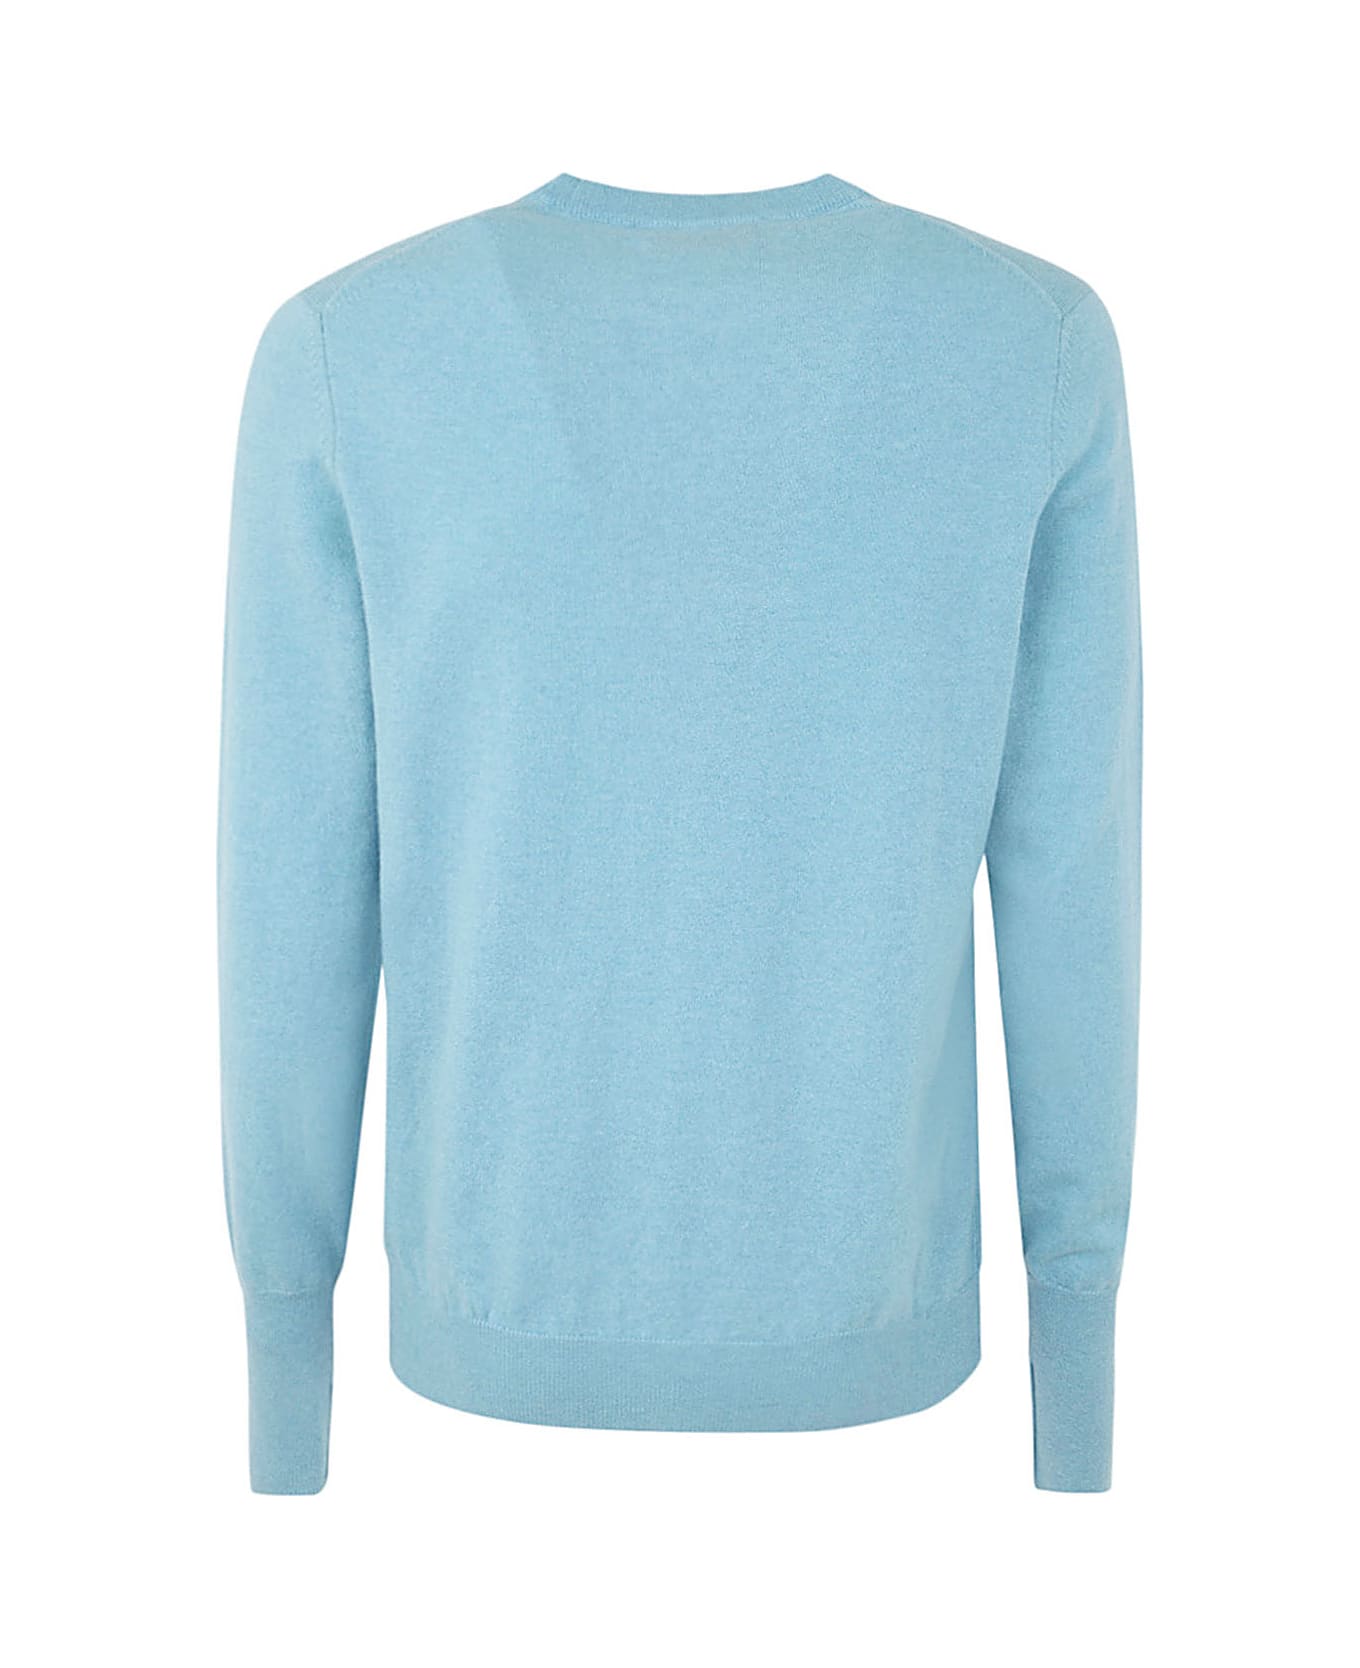 Ballantyne Cashmere Round Neck Pullover - Light Blue ニットウェア